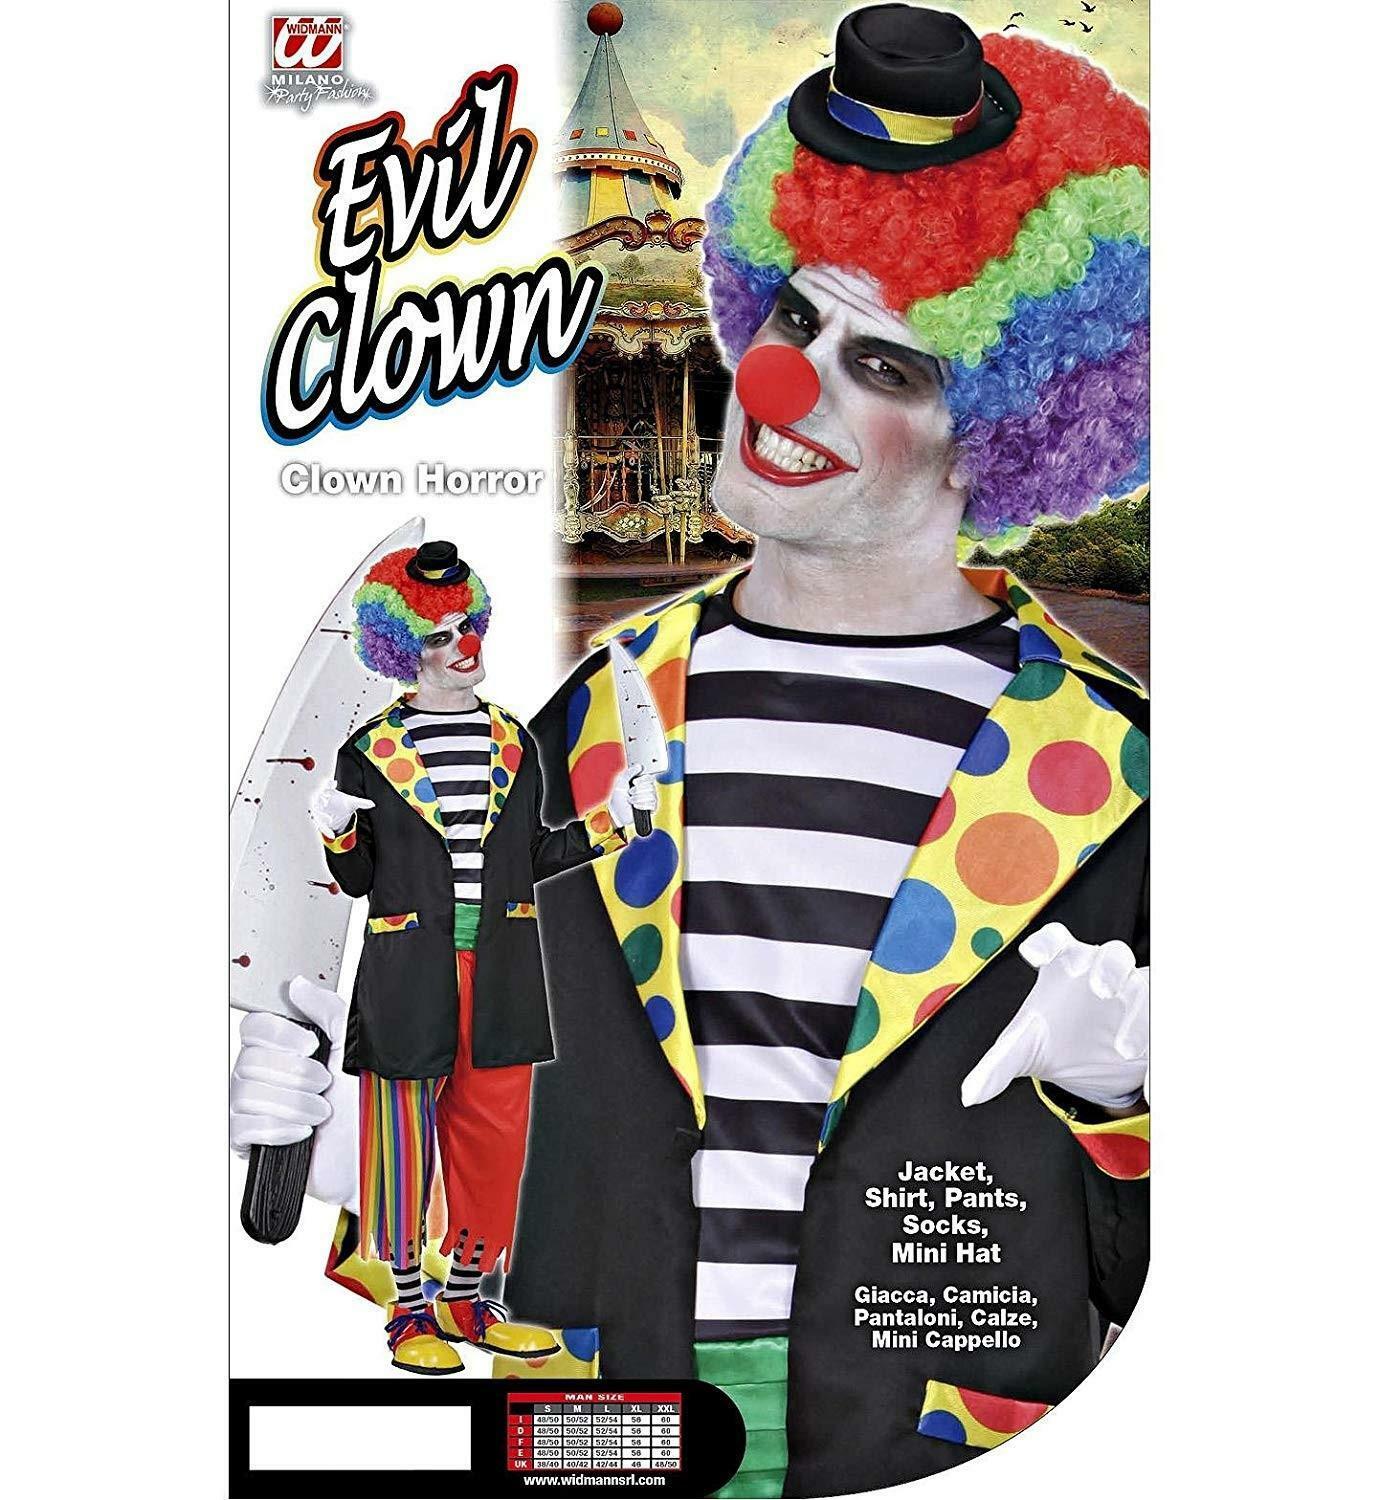 widmann costume clown horror taglia m